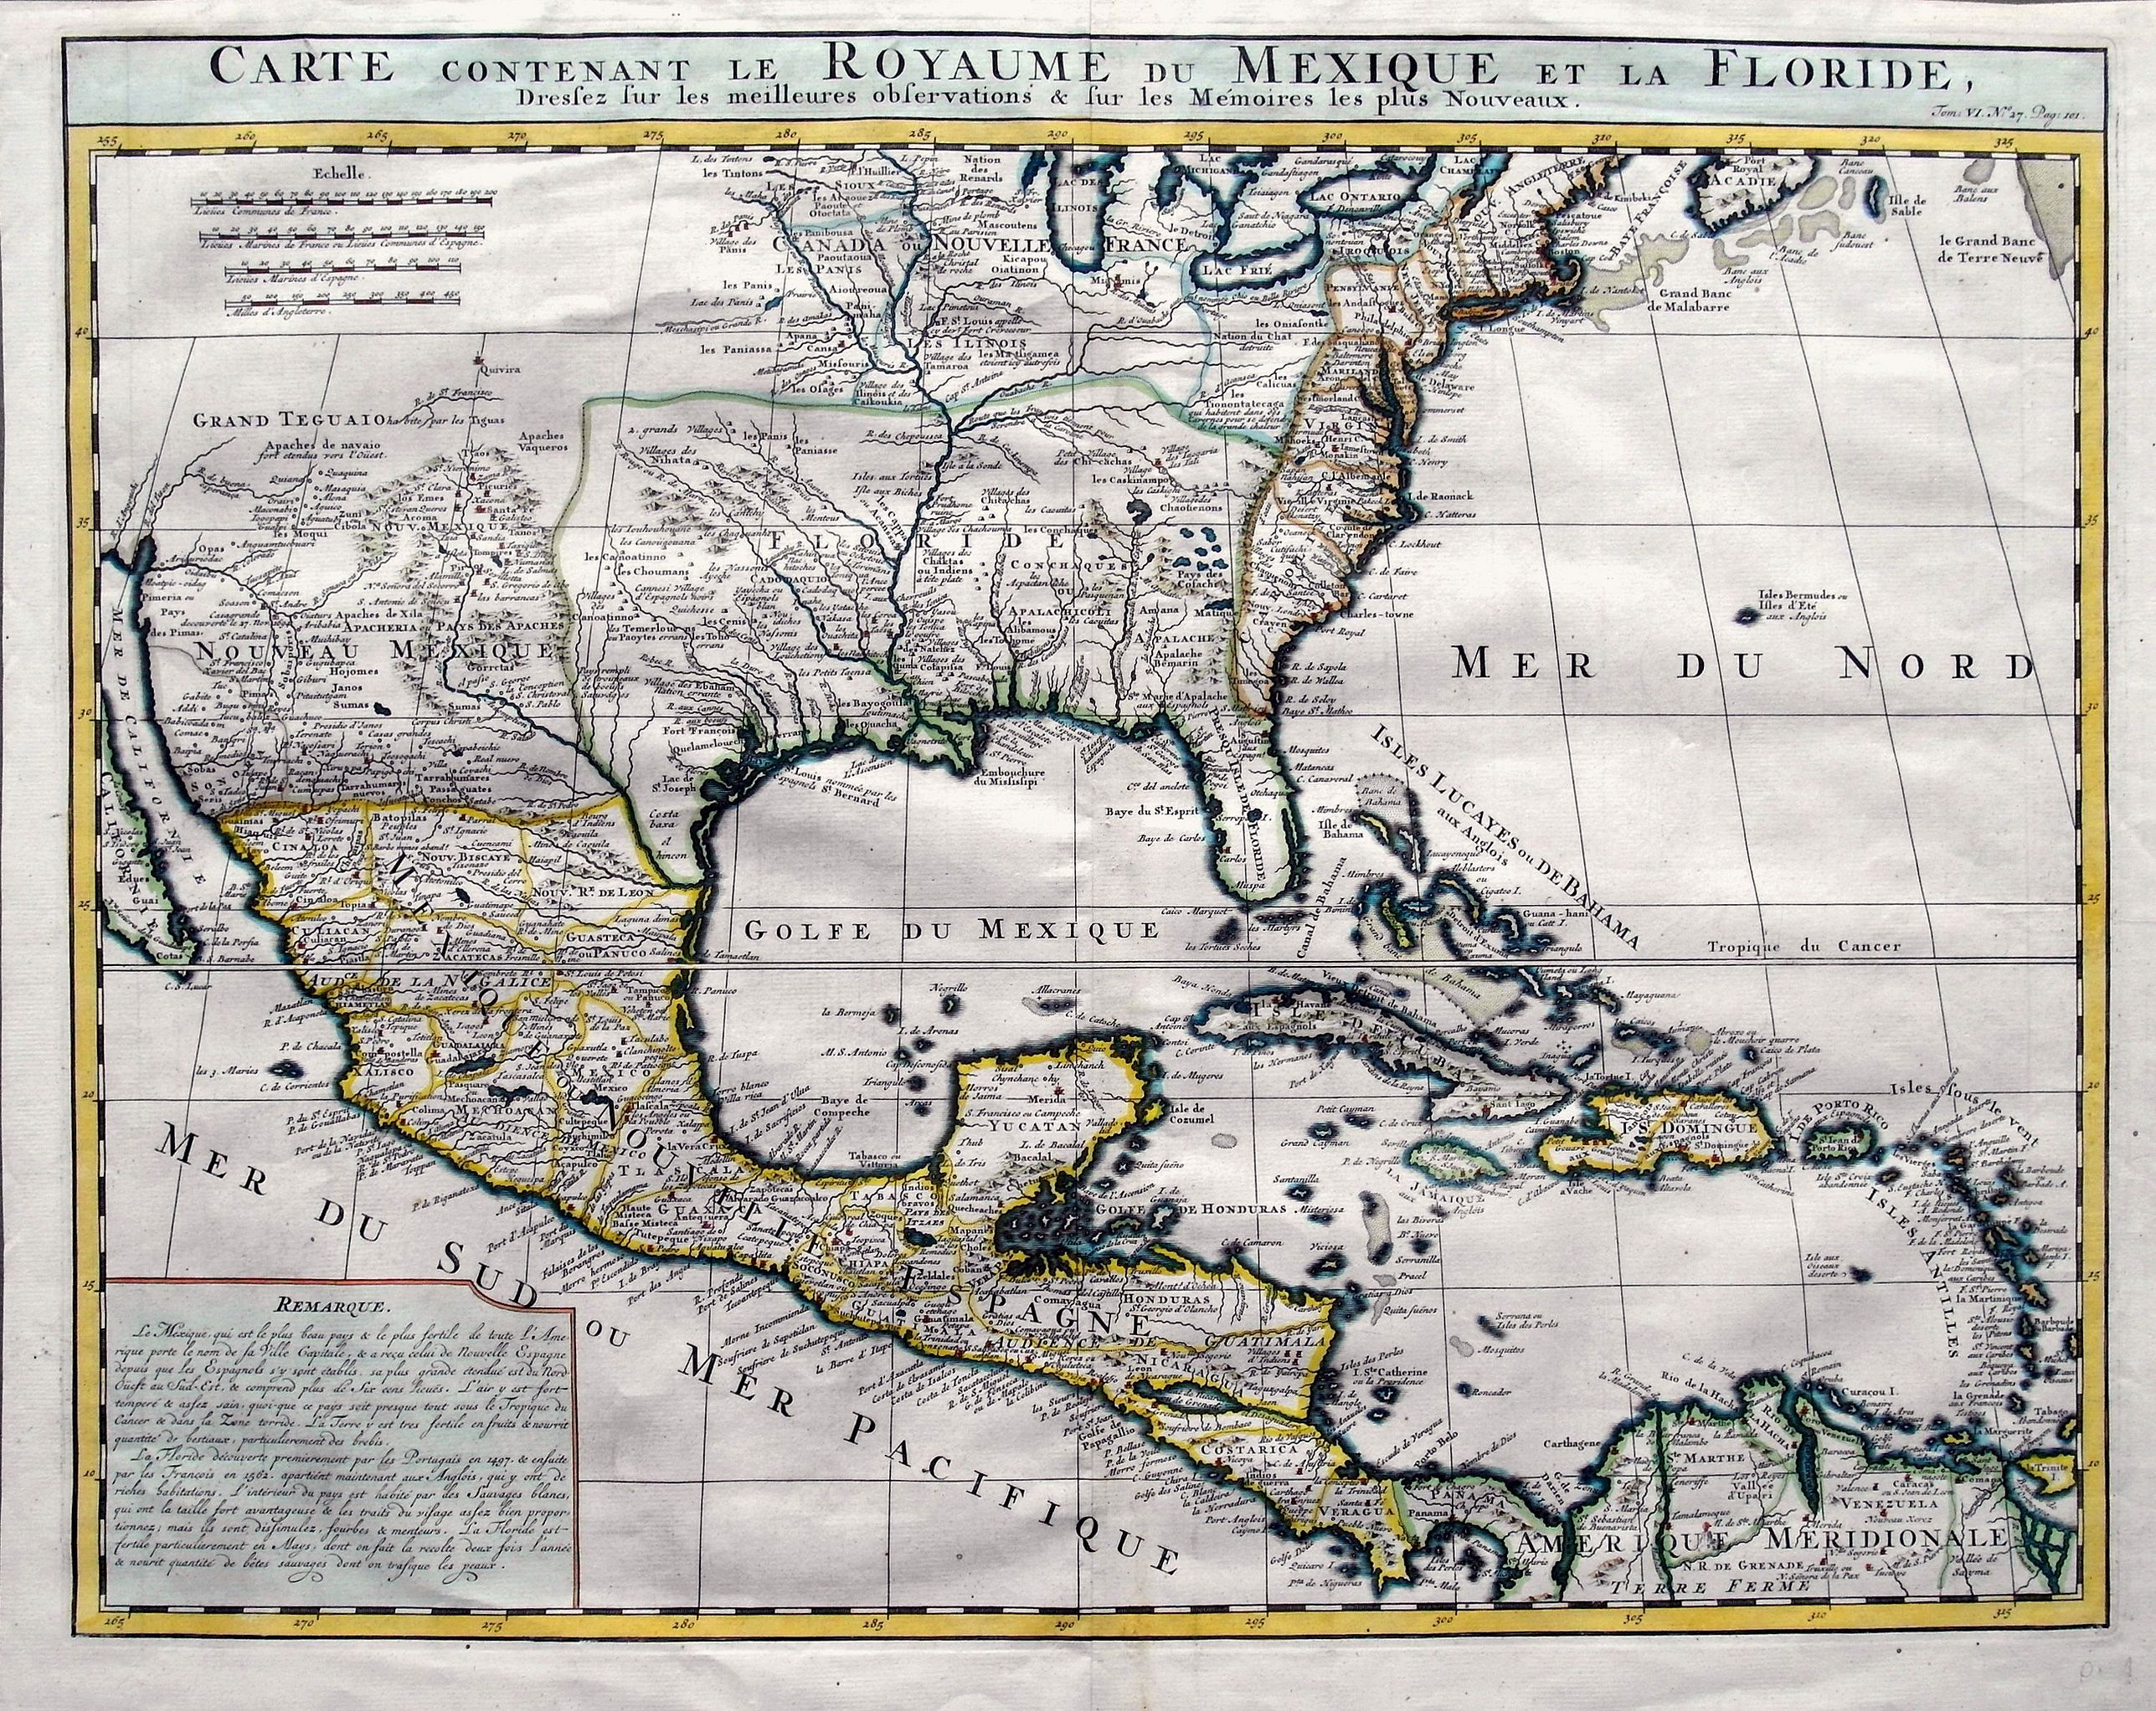 Carte Contenant le Royaume du Mexique et la Floride 